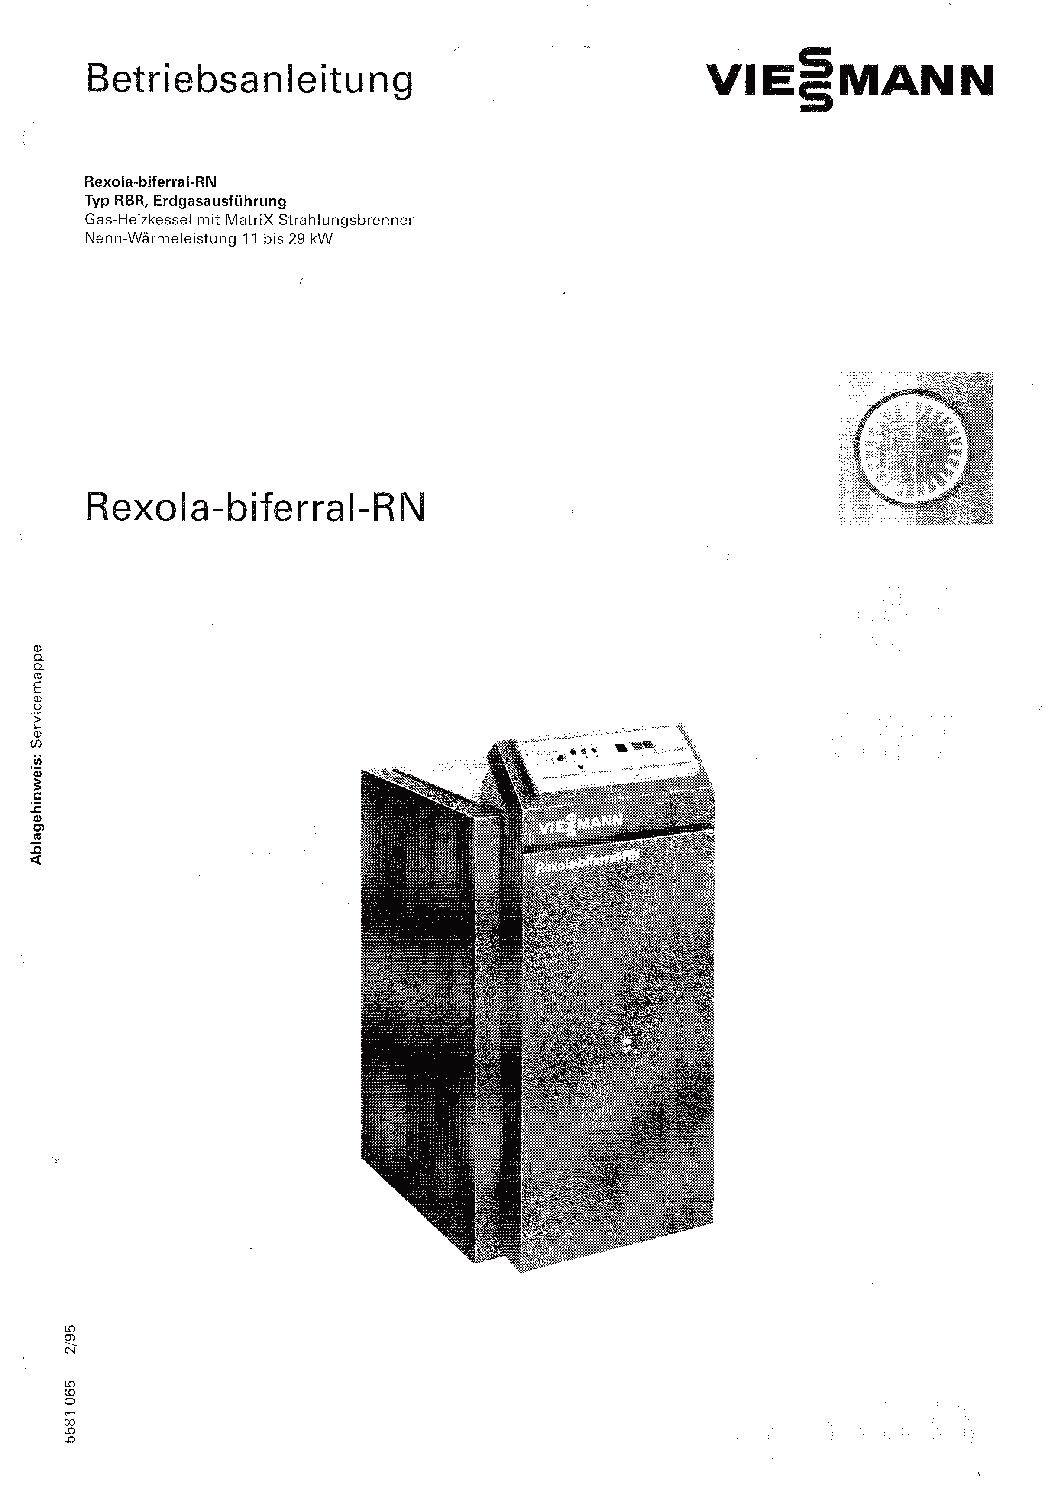 Viessmann Rexola-biferral-RN Bedienungsanleitung